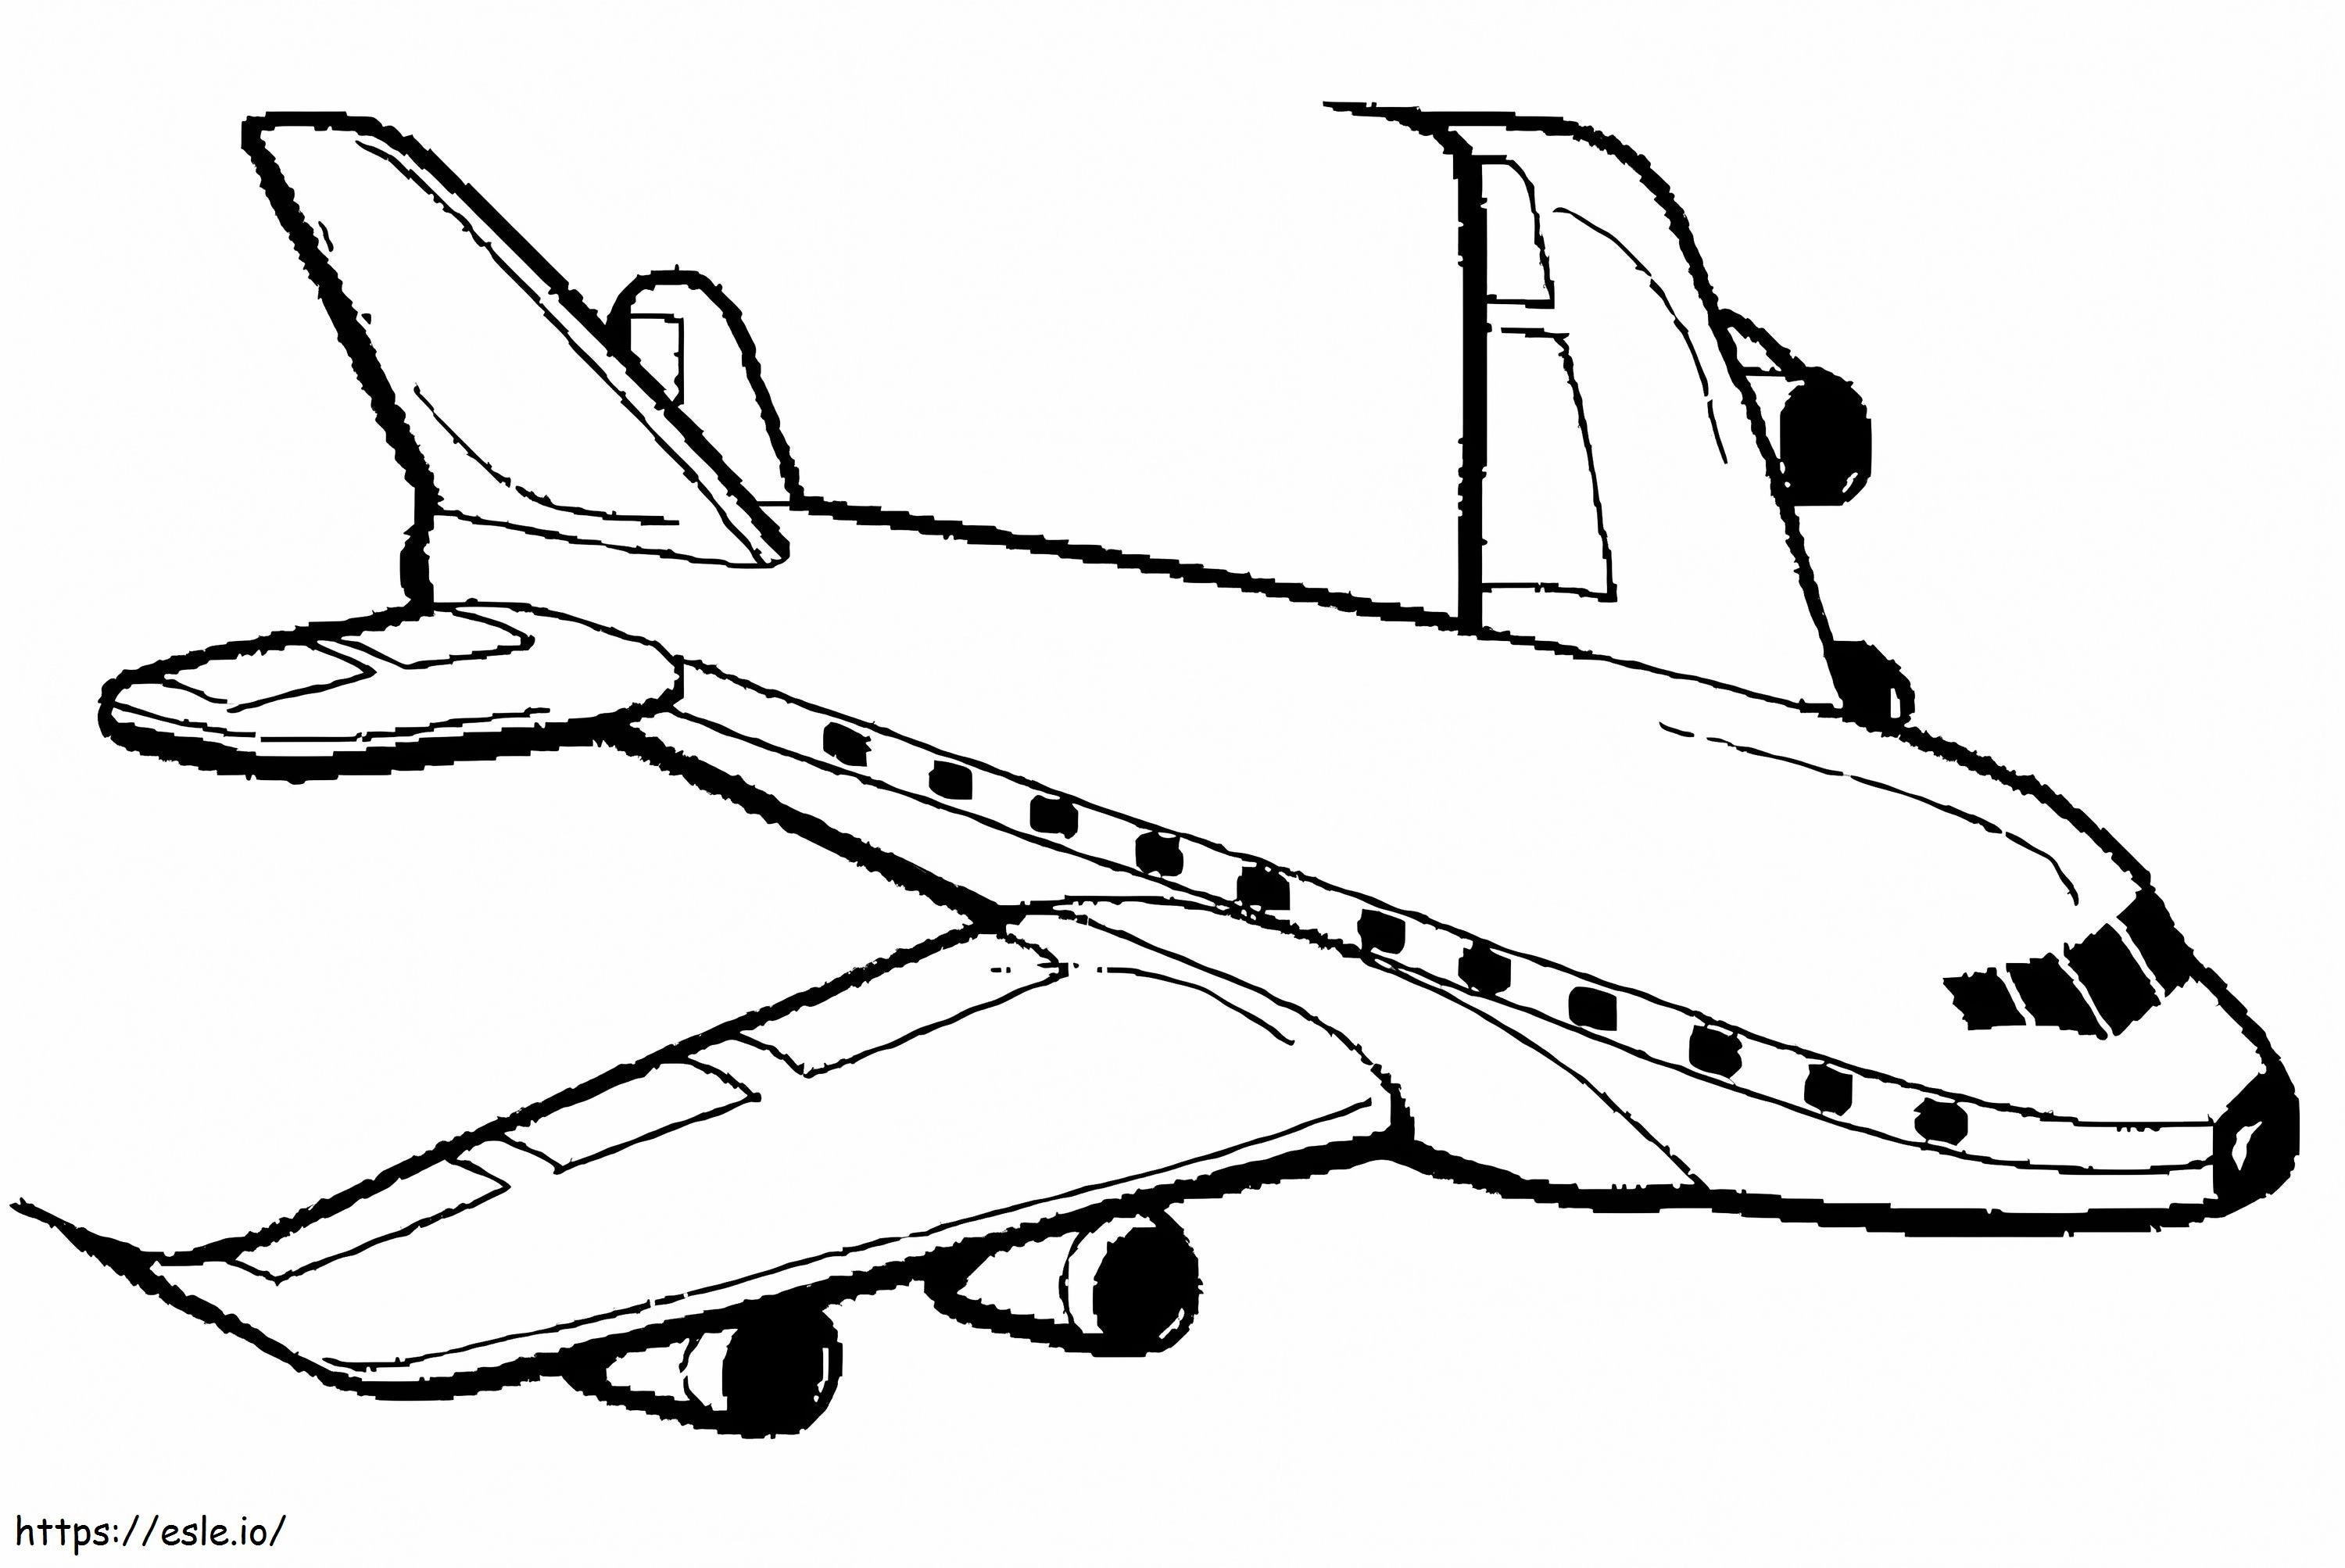 Einfaches Flugzeug ausmalbilder